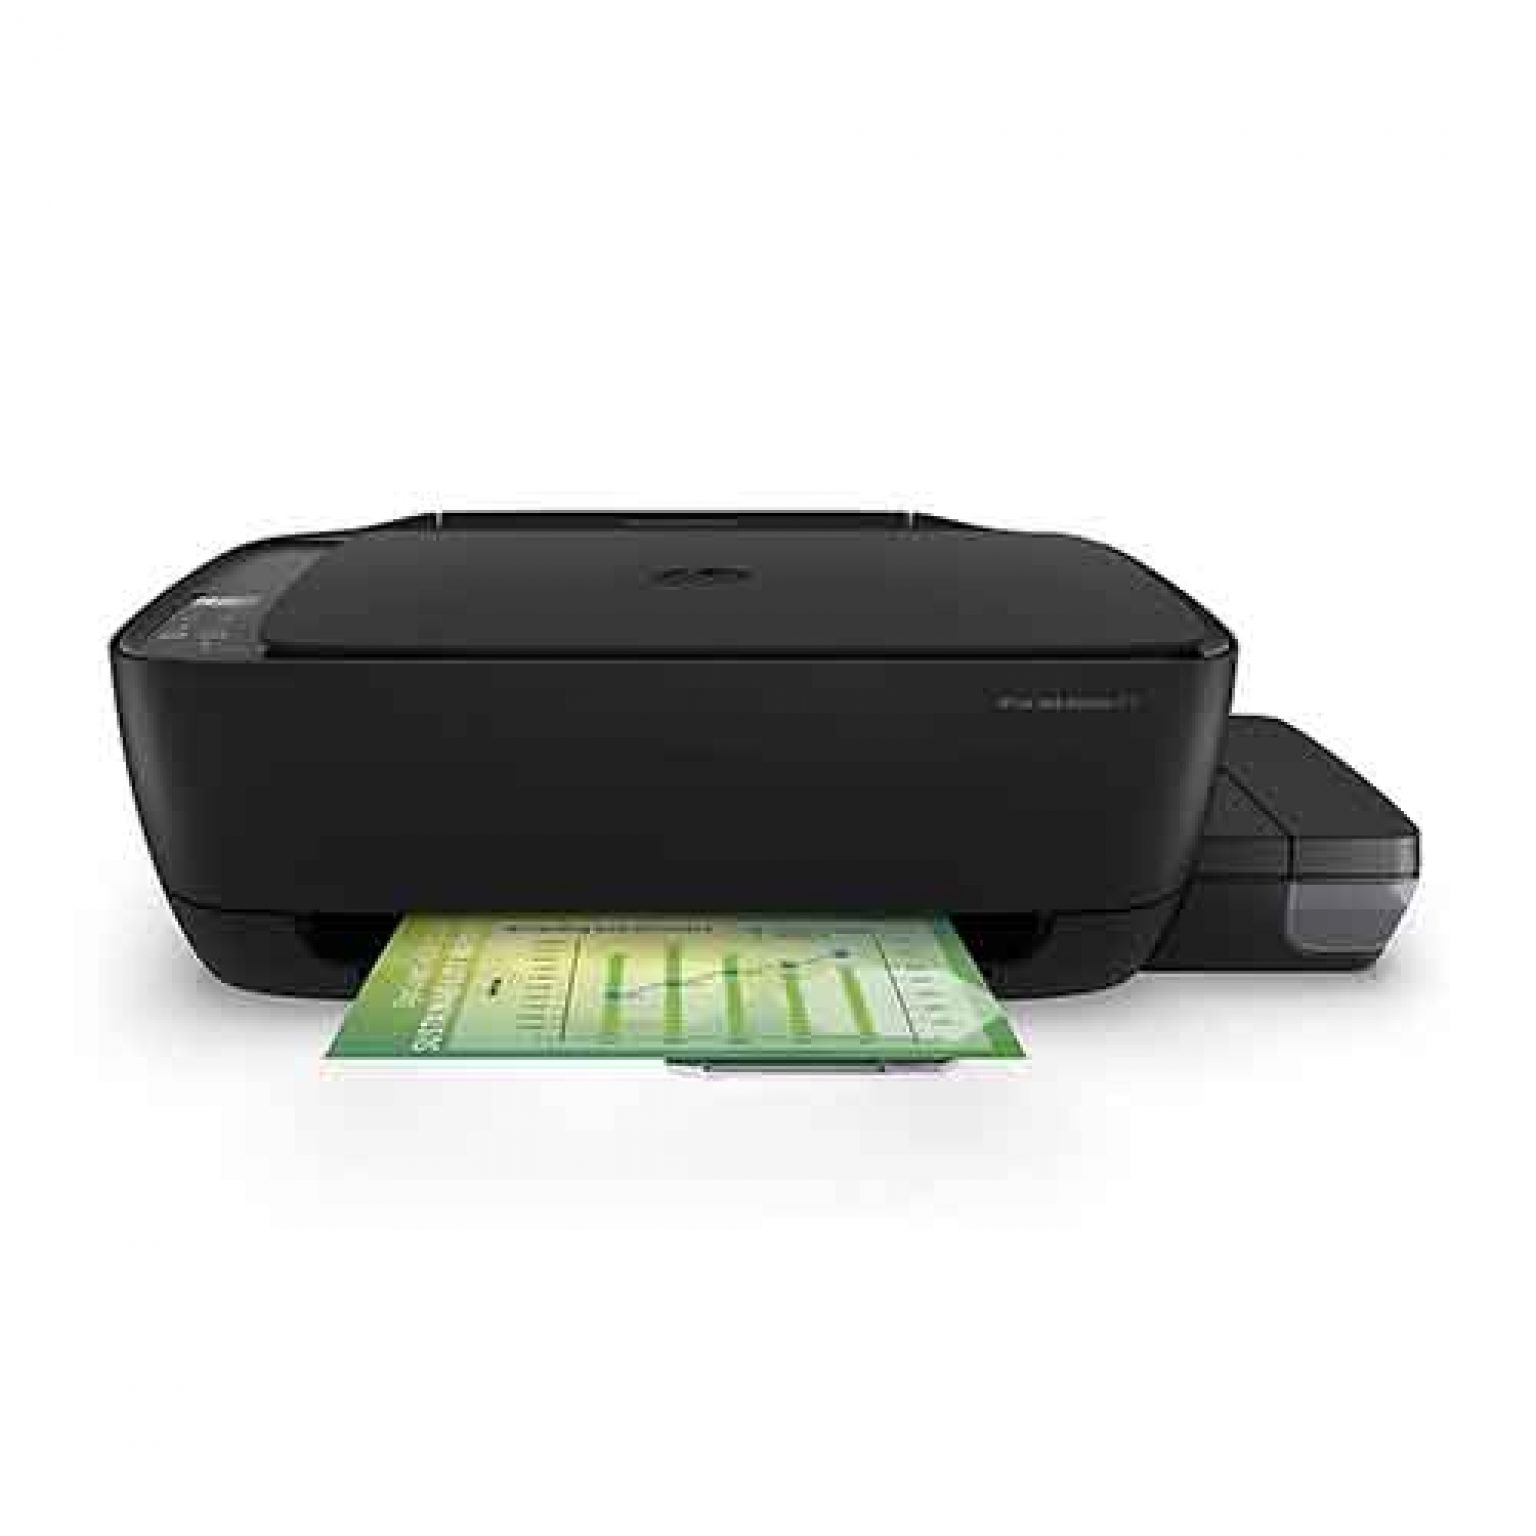 Hp Laserjet Pro Mfp M26a 3 In 1 Black And White Printer Printer Copier Scanner Price In 7968